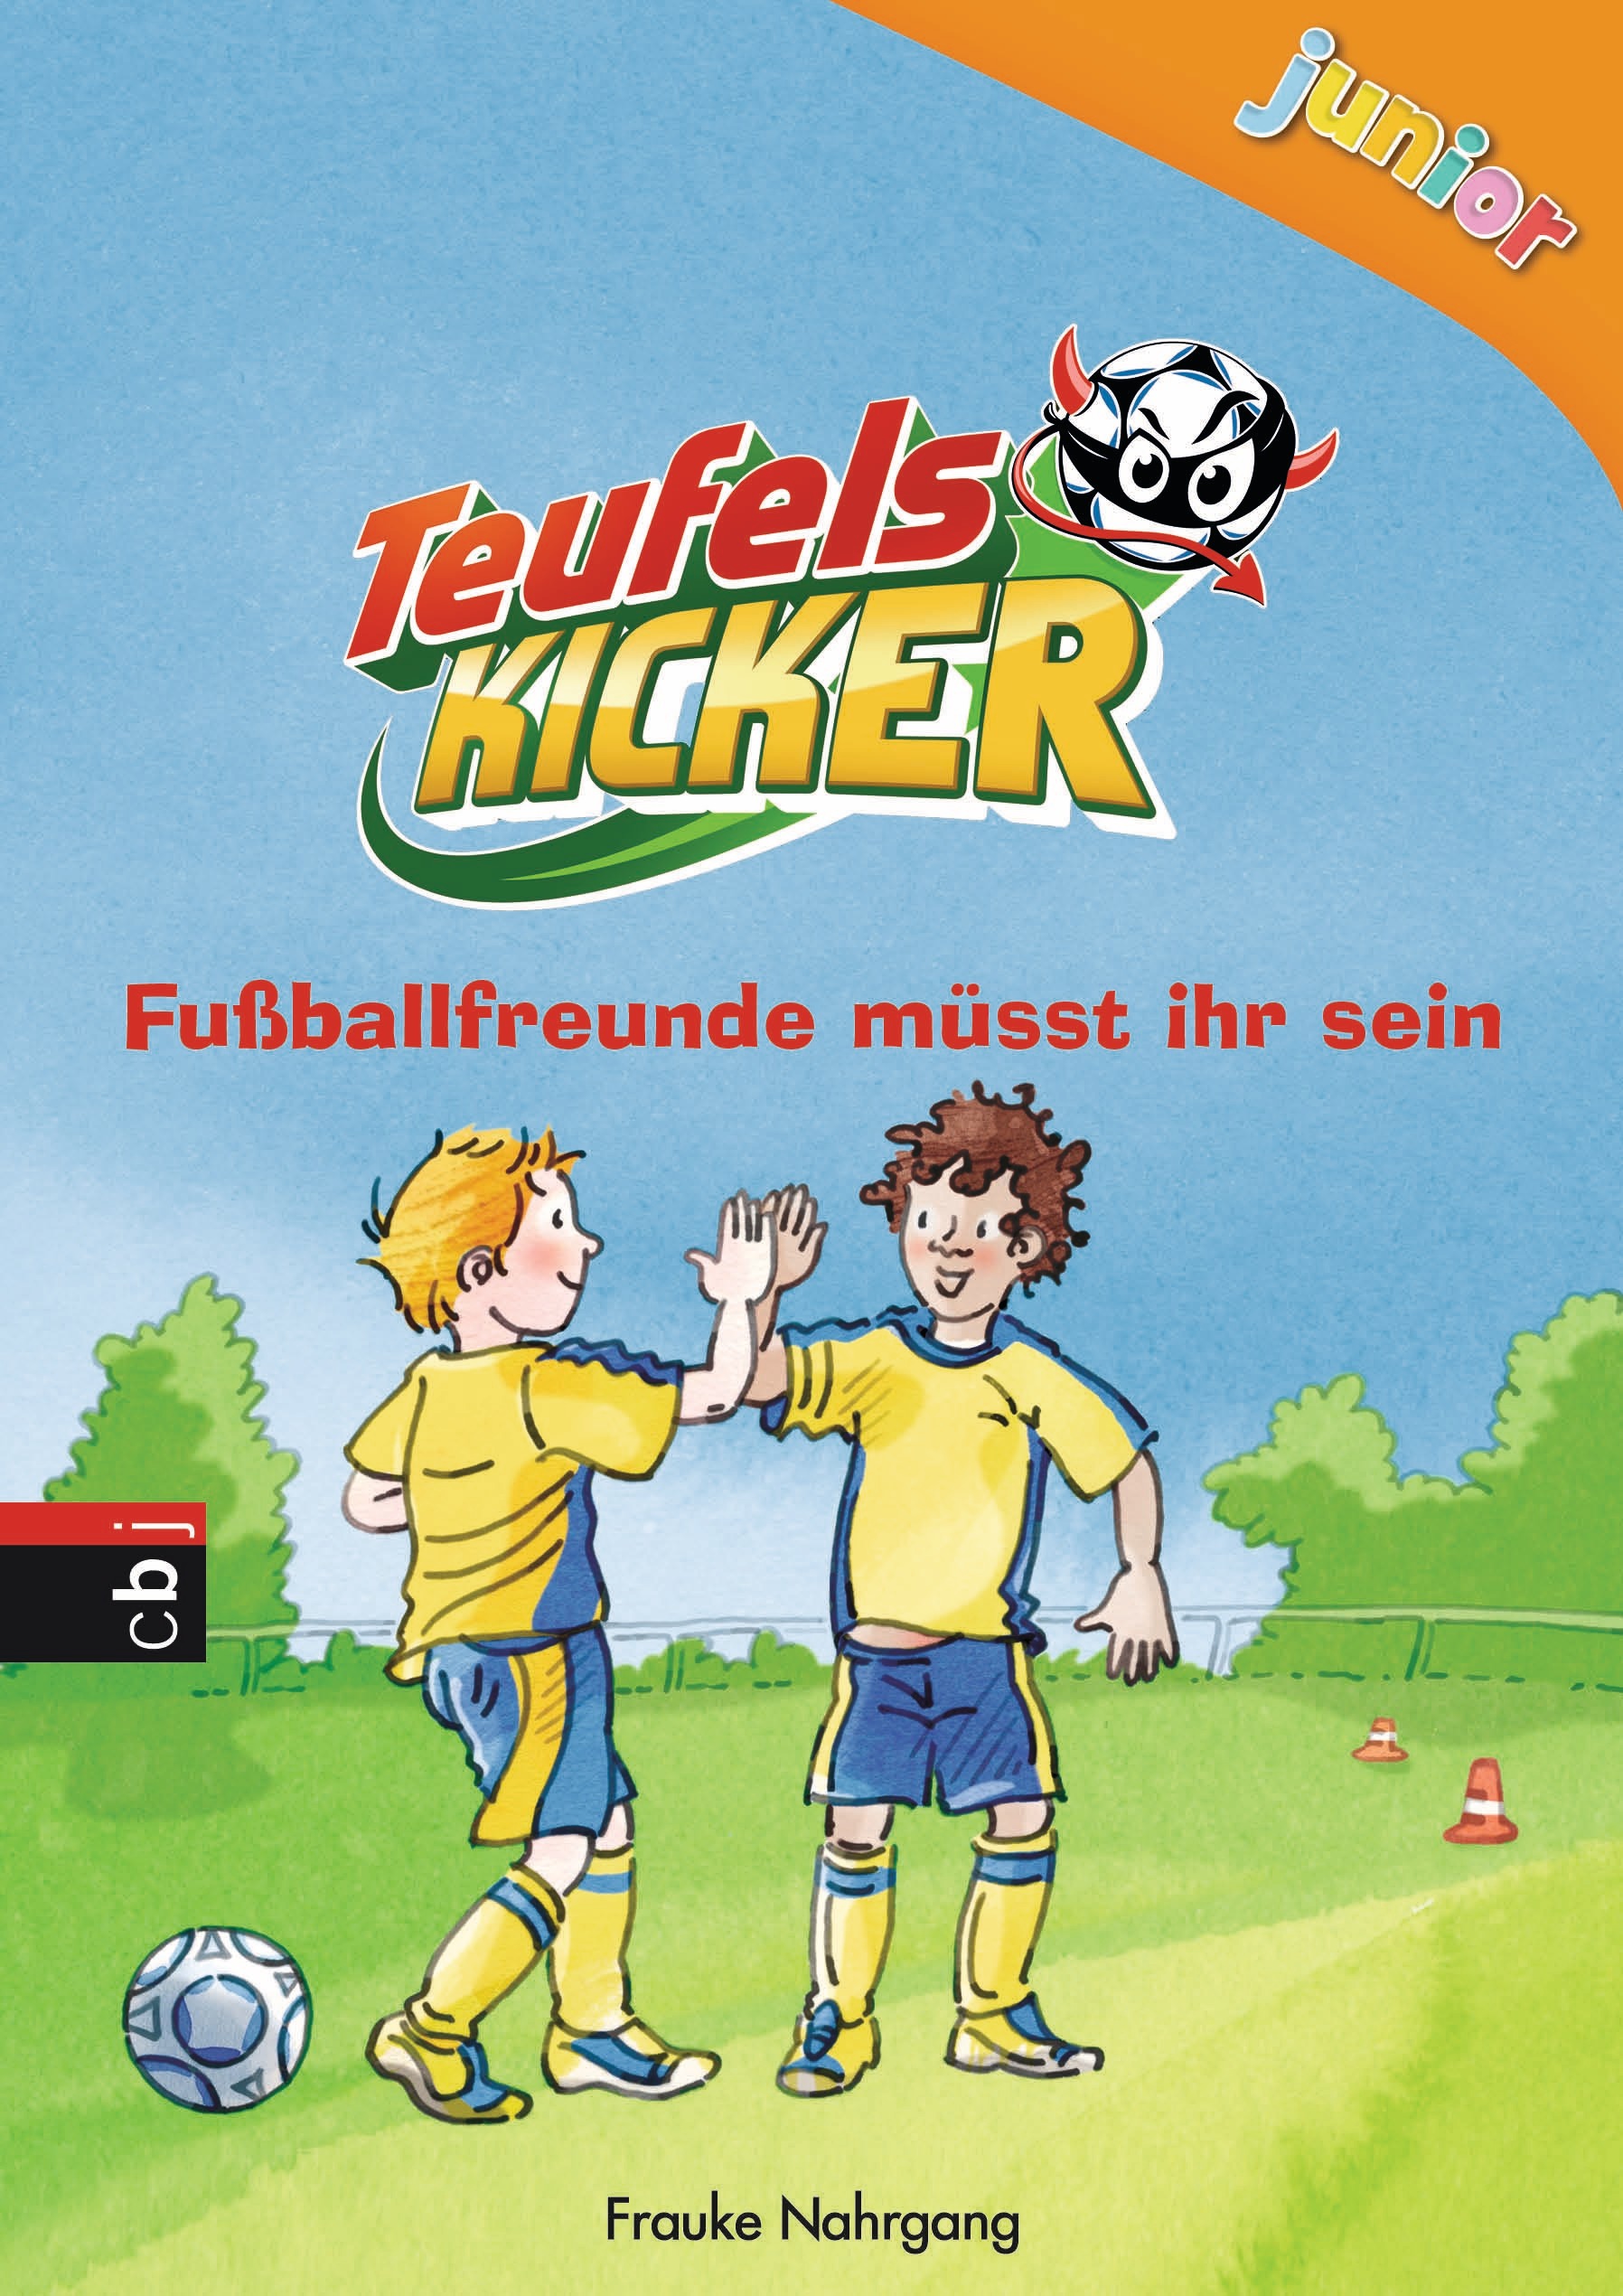 Frauke NahrgangTeufelskicker junior – Fußballfreunde müsst ihr sein (Bd. 4)